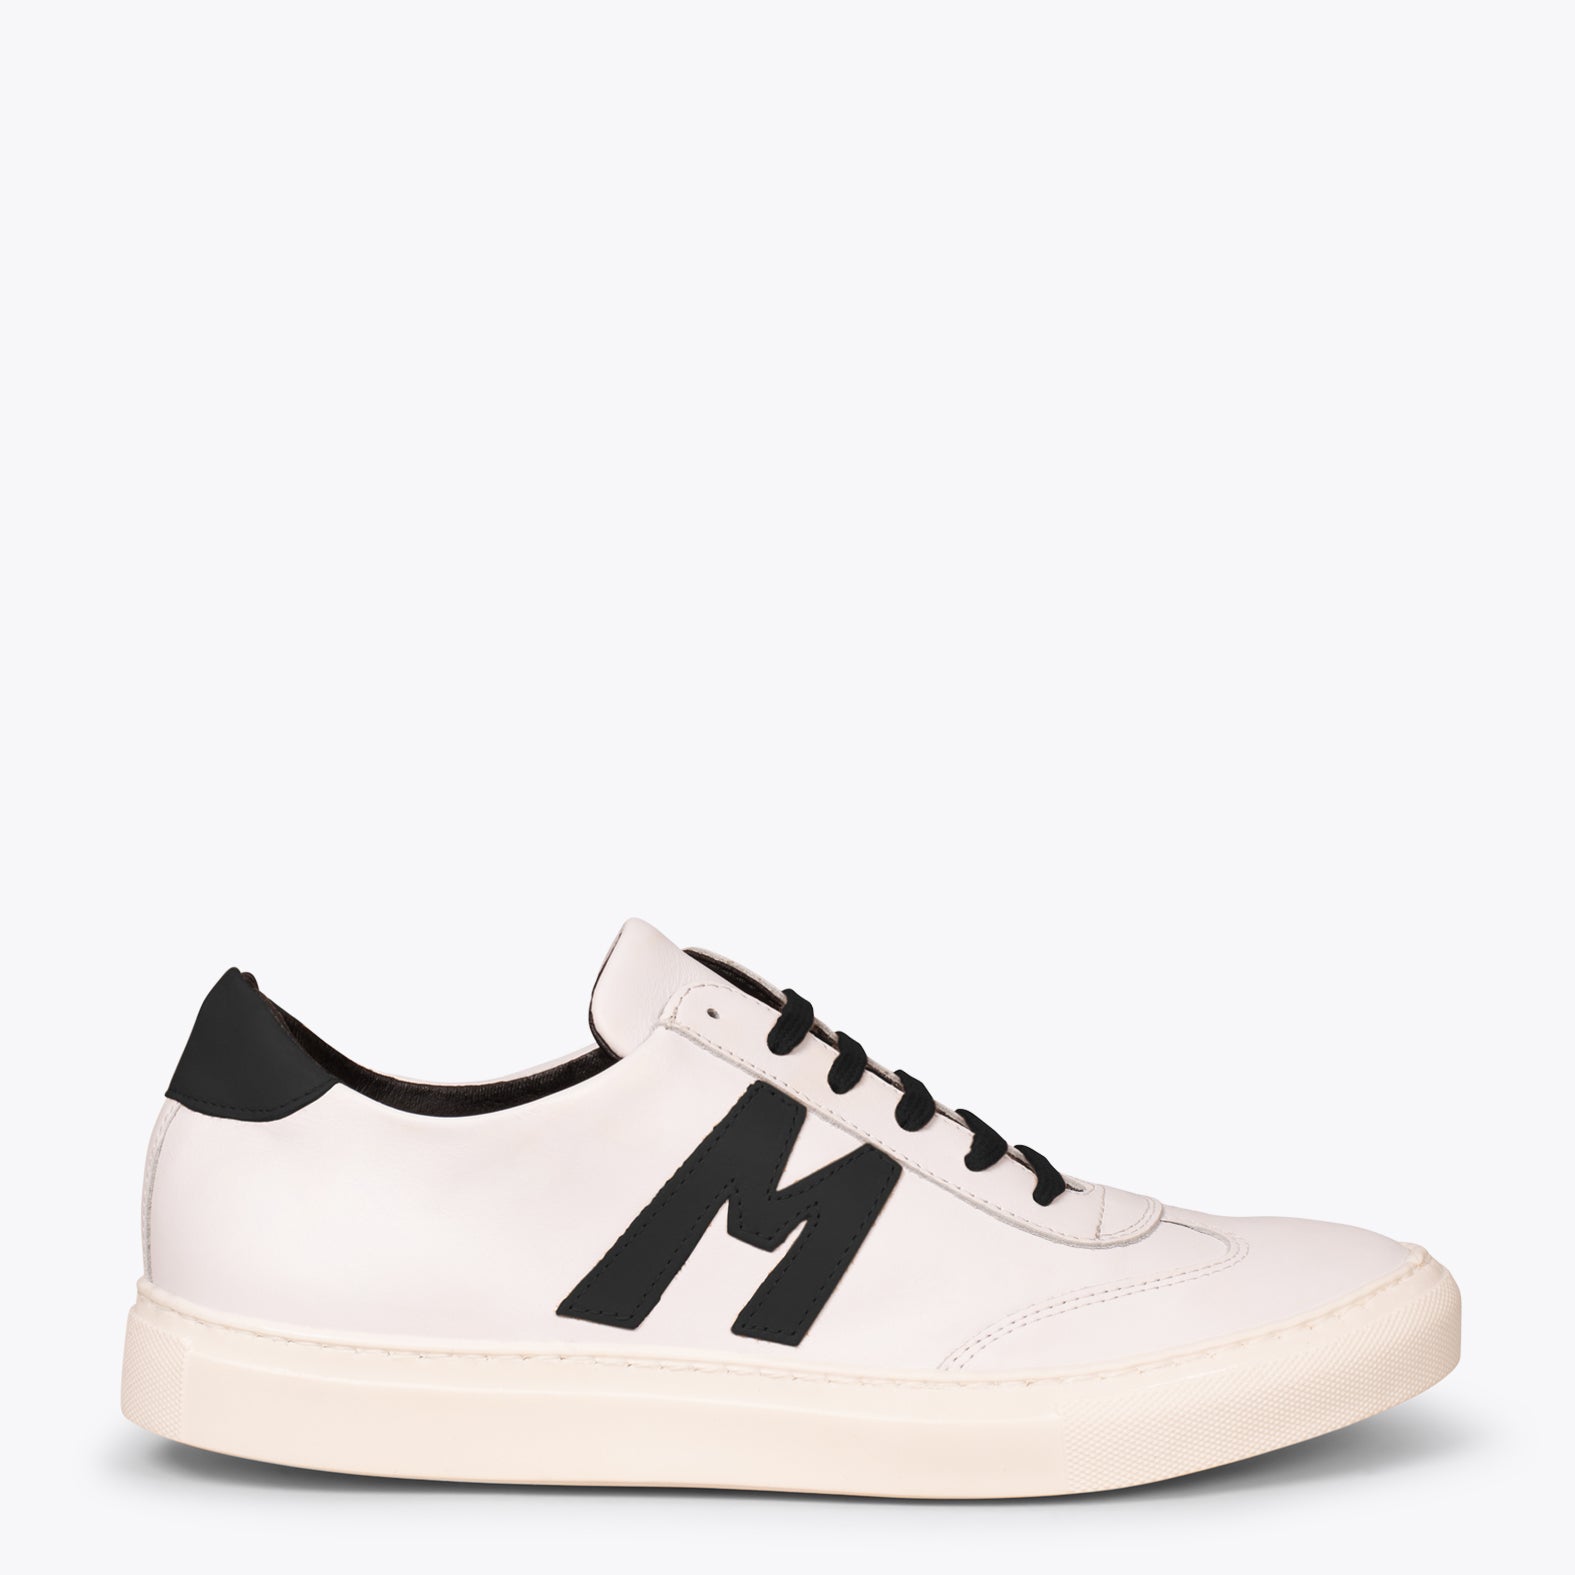 MONACO – WHITE & BLACK casual sneaker for men